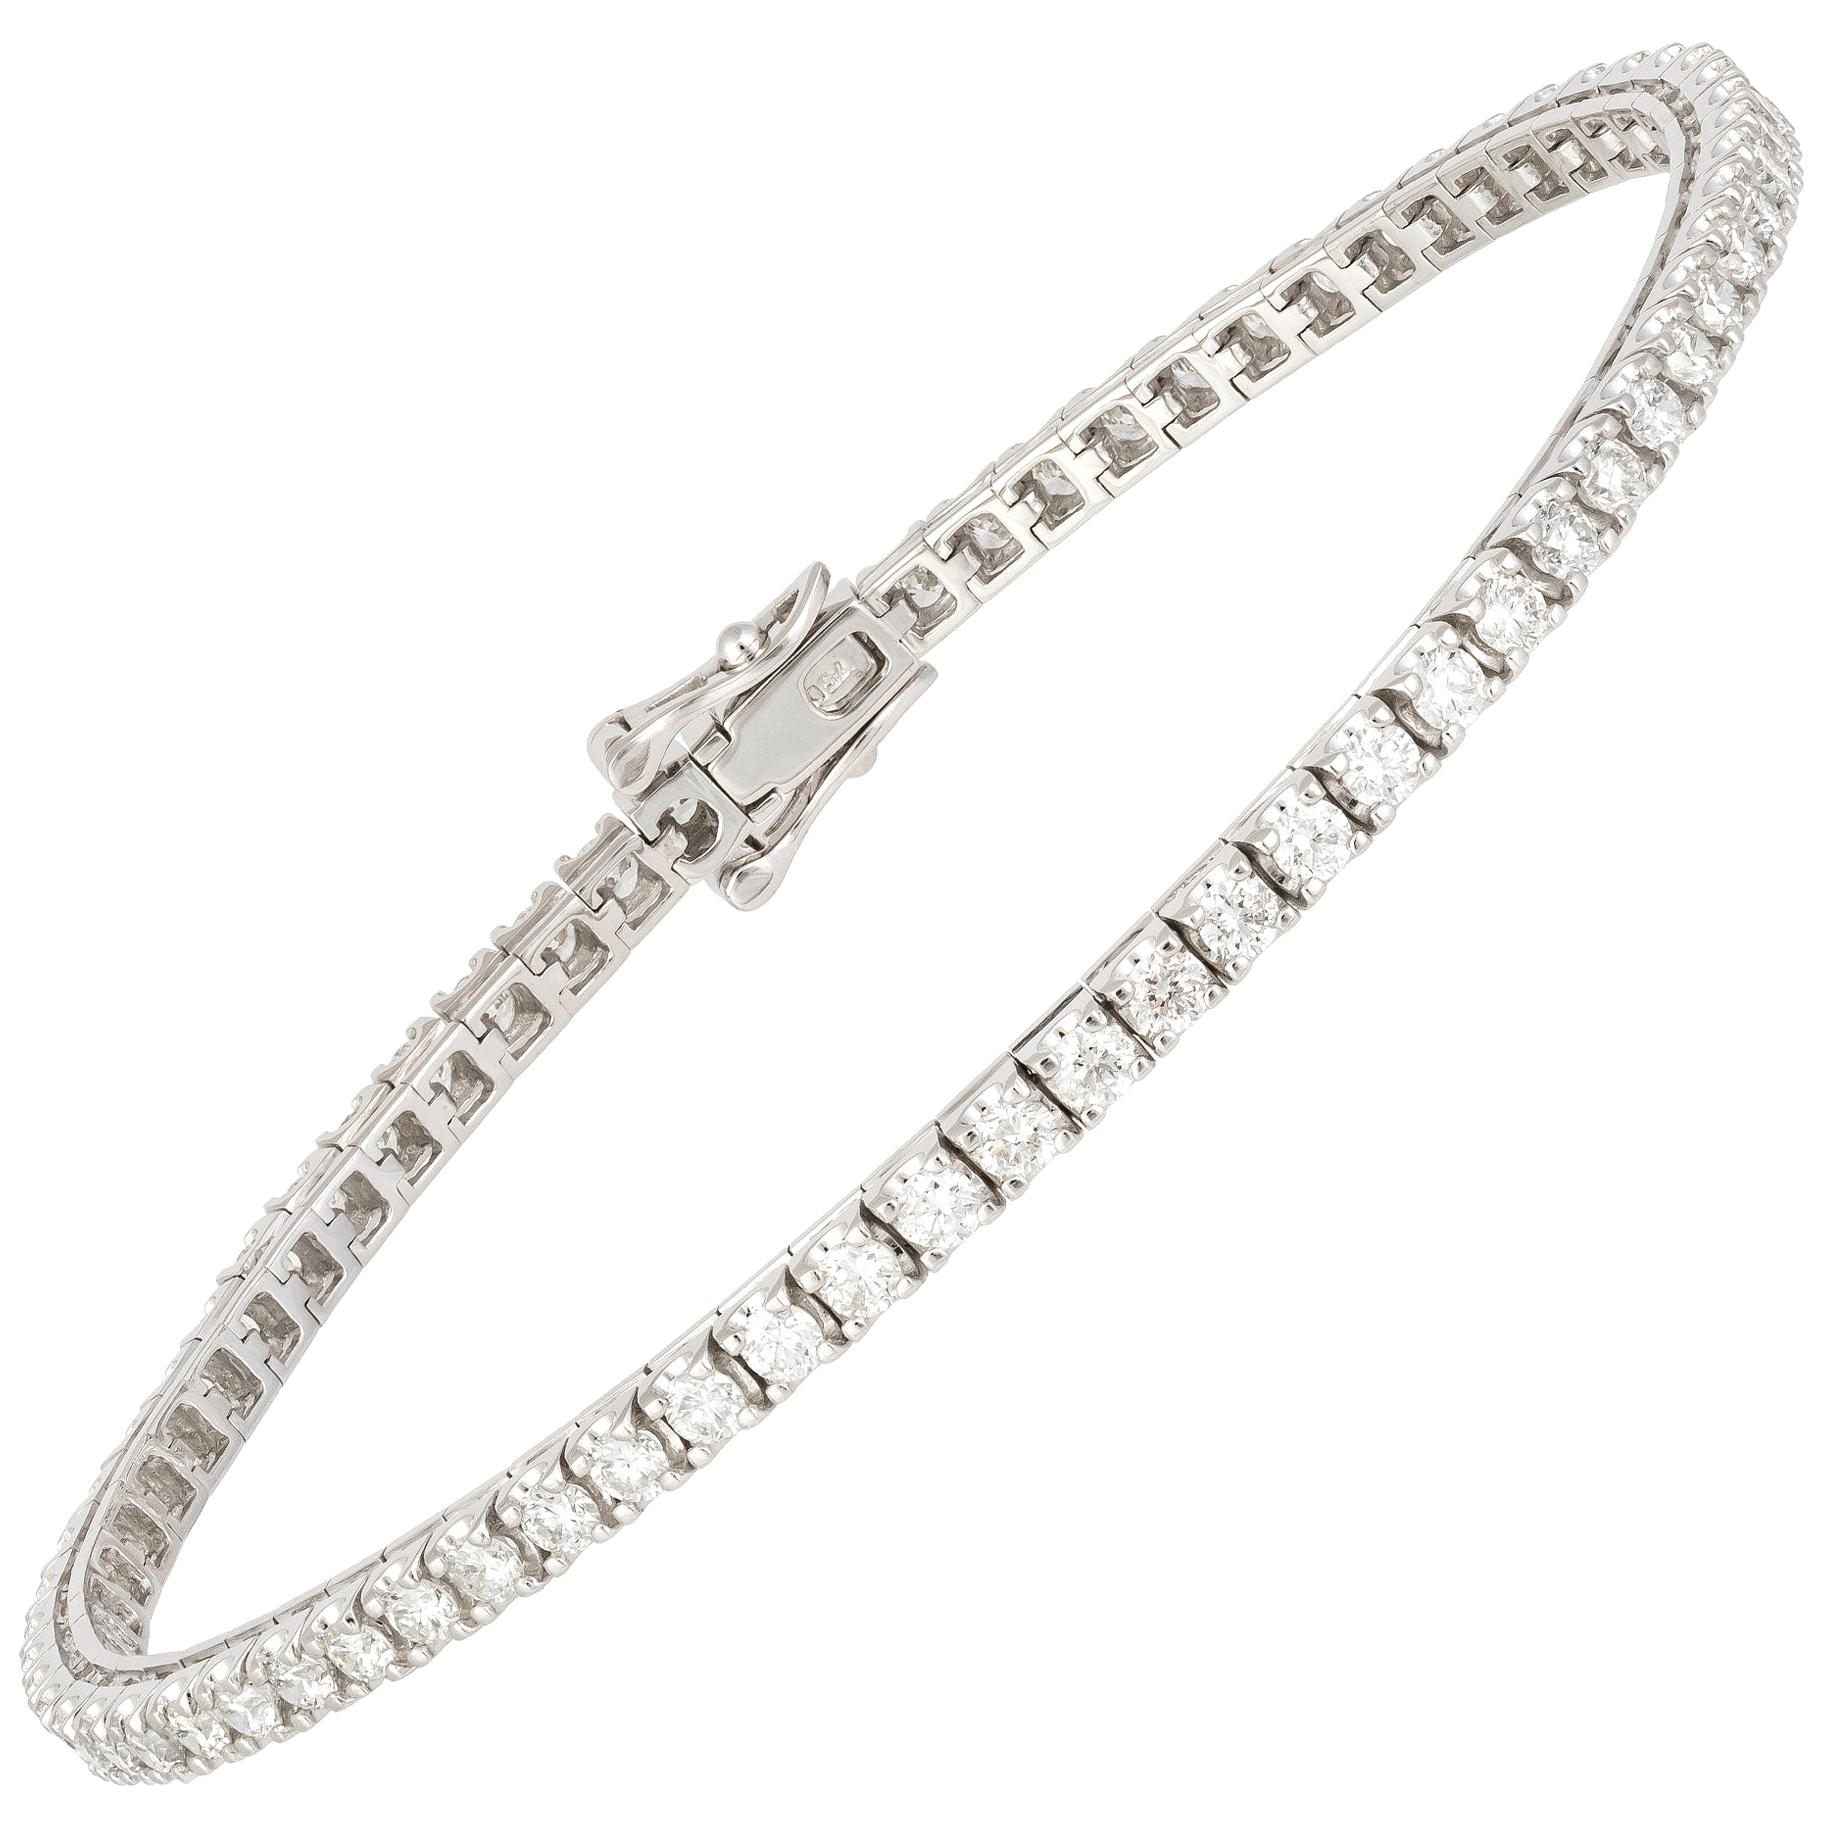 Bracelet tennis en or blanc 18 carats avec diamants de 3,00 carats /69 pièces / diamants de 3,00 carats